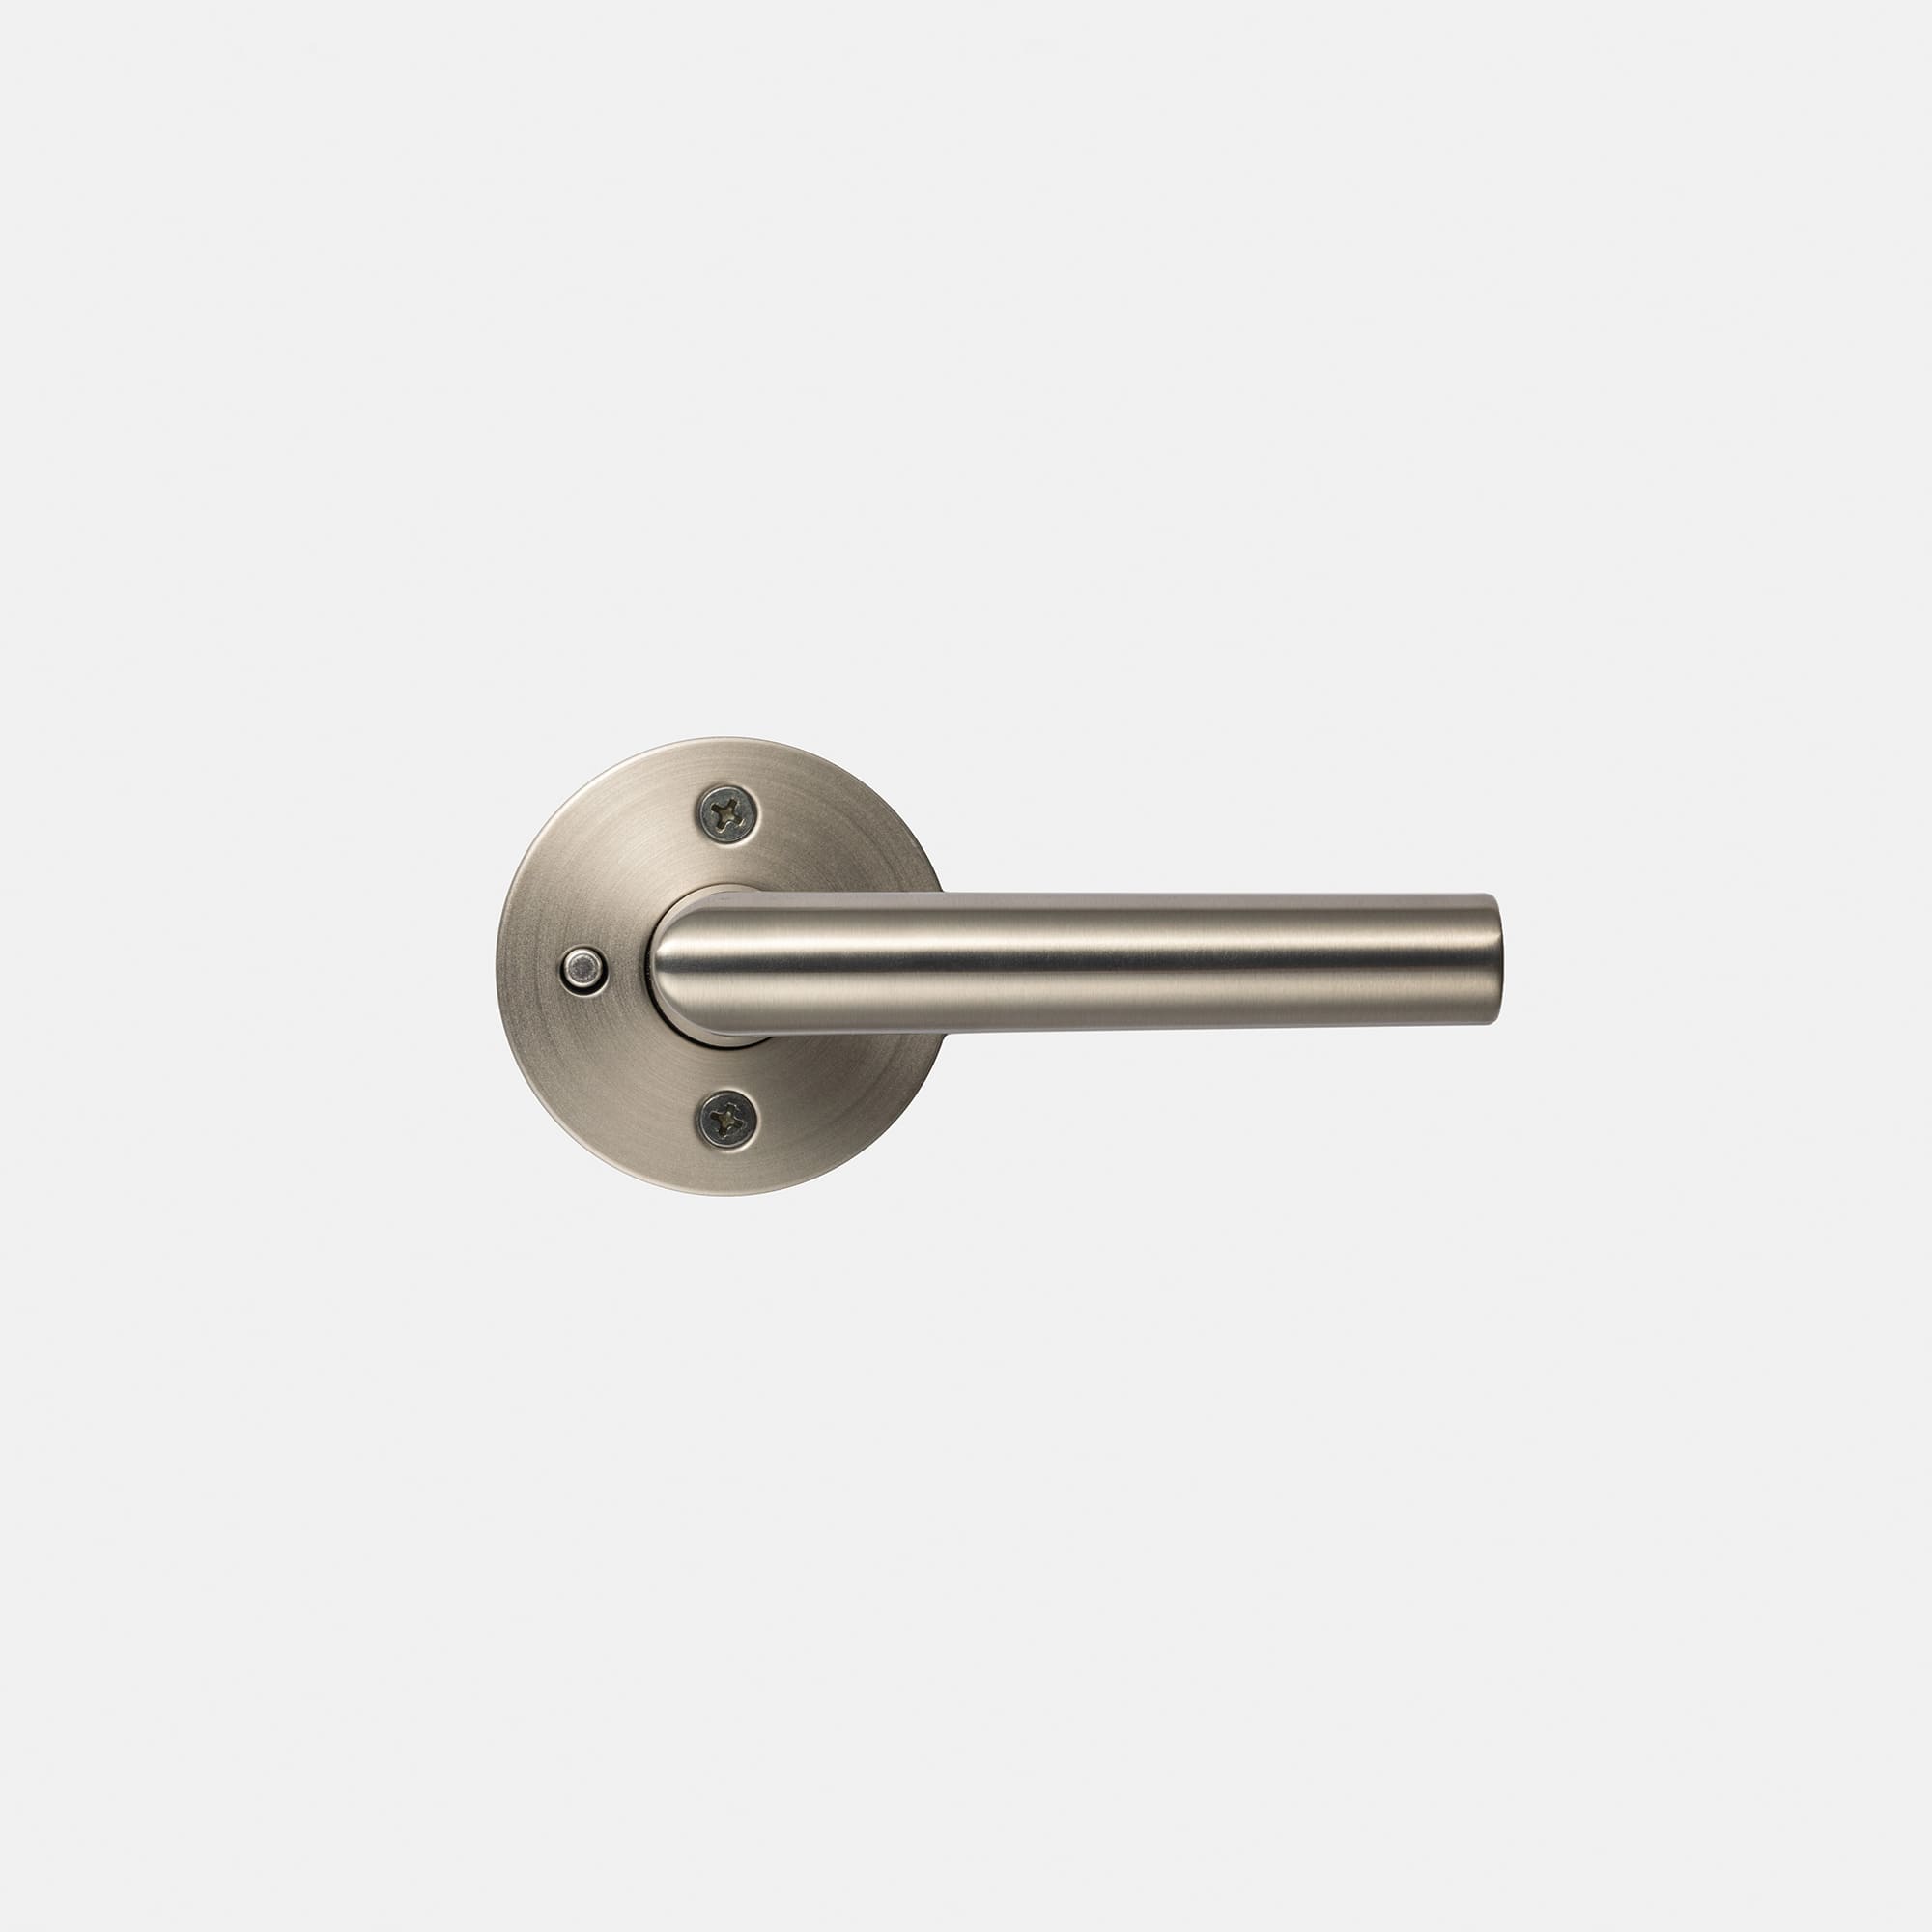 錠付きドアパーツ ストレートハンドル ニッケルサテン 間仕切錠 PS-HD021-05-G290 この小さいボタンを押して施錠することができます。ハンドルを下げると開錠します。